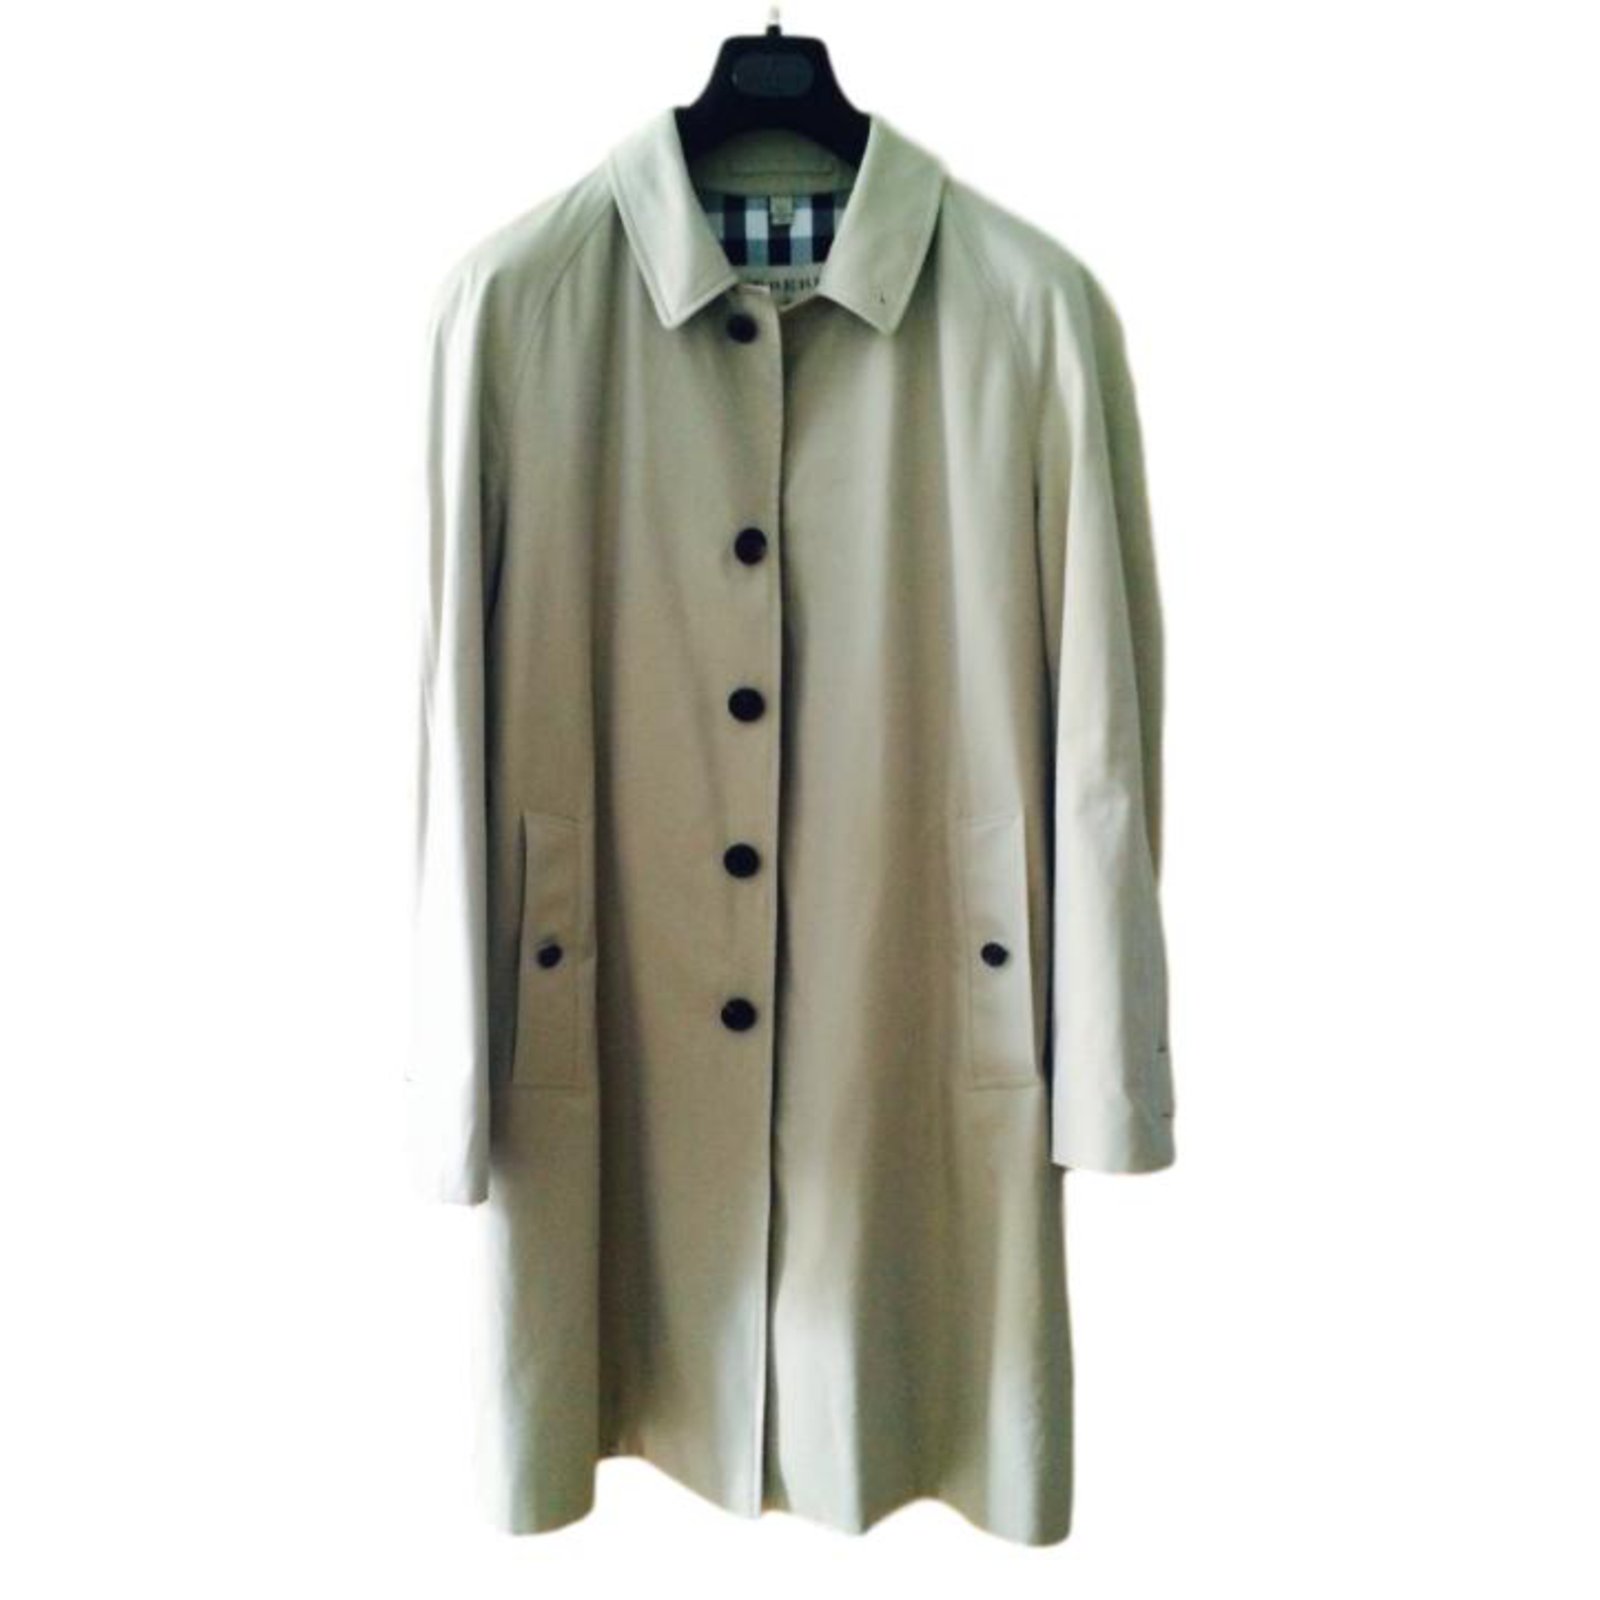 burberry camden trench coat